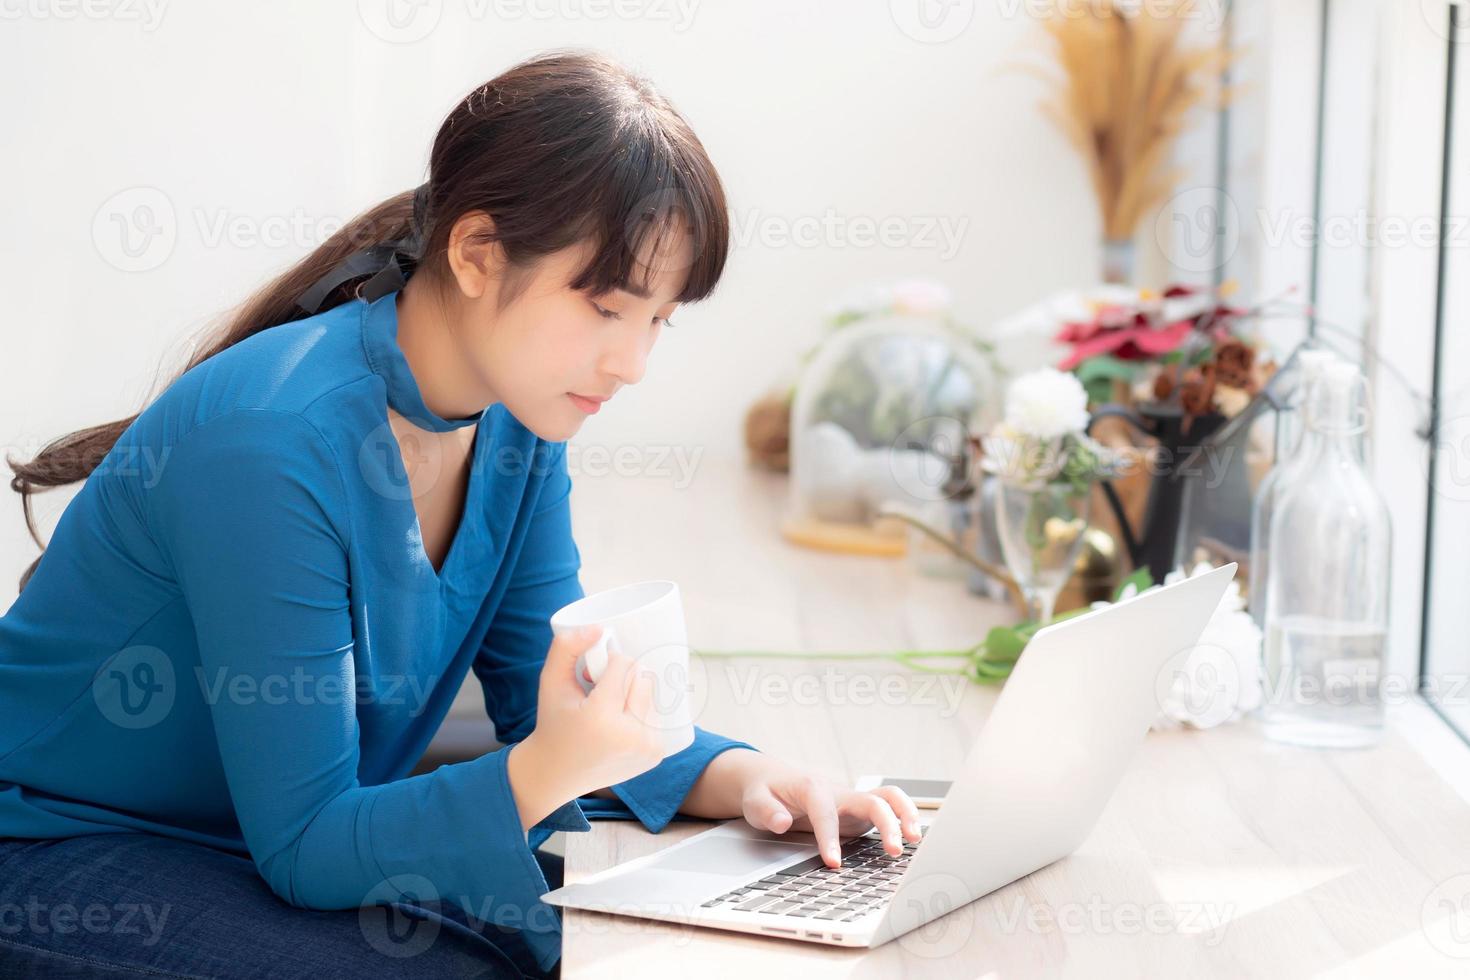 bella giovane donna asiatica freelance che sorride lavorando e sul computer portatile alla caffetteria della scrivania con una ragazza asiatica professionale che usa il taccuino e beve il concetto di caffè, affari e stile di vita. foto